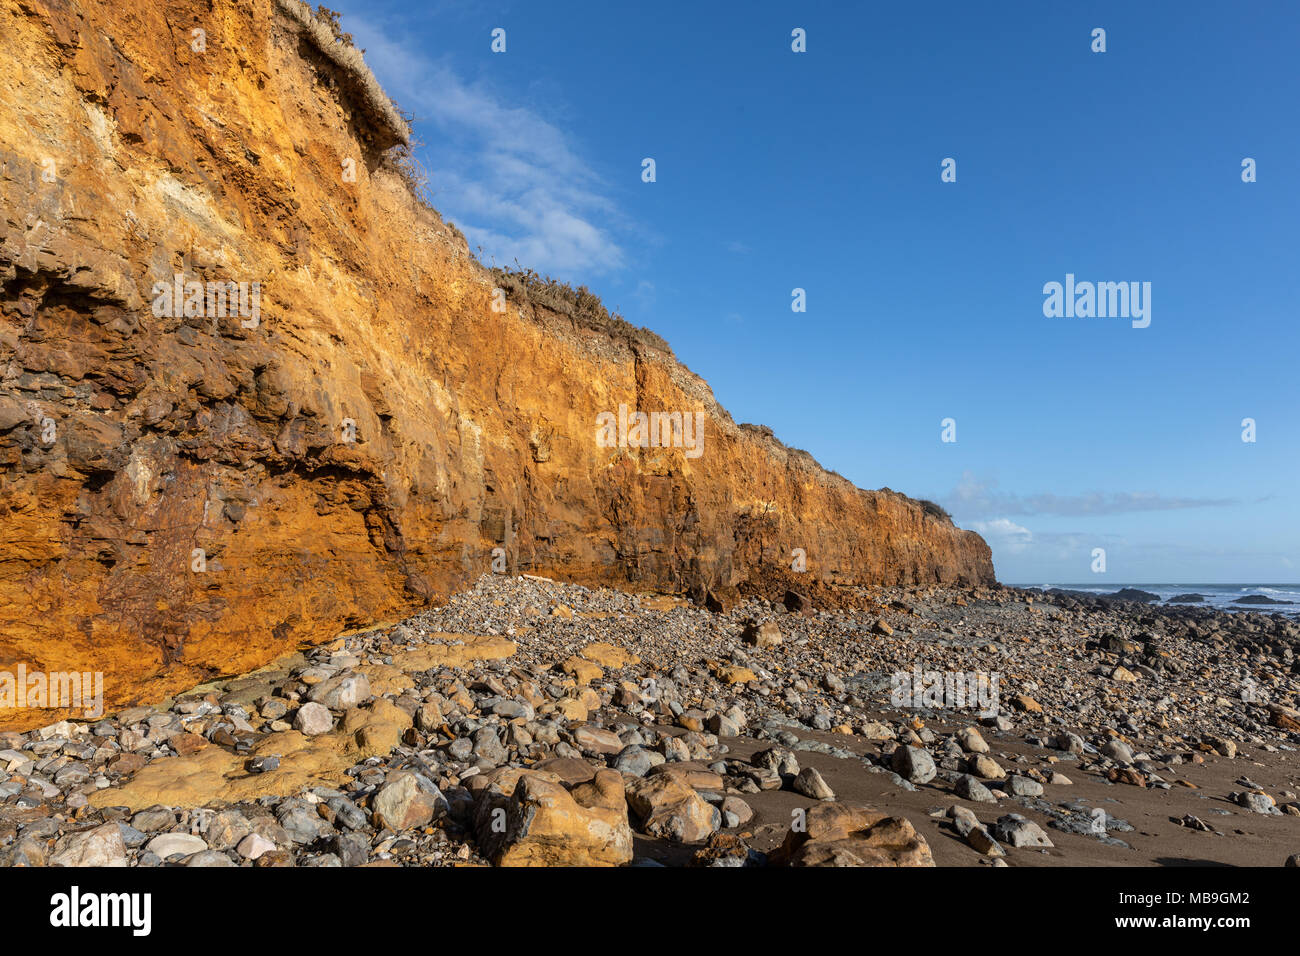 A lo largo de los acantilados de la costa (Cayola Les Sables d'olonne, Francia) Foto de stock